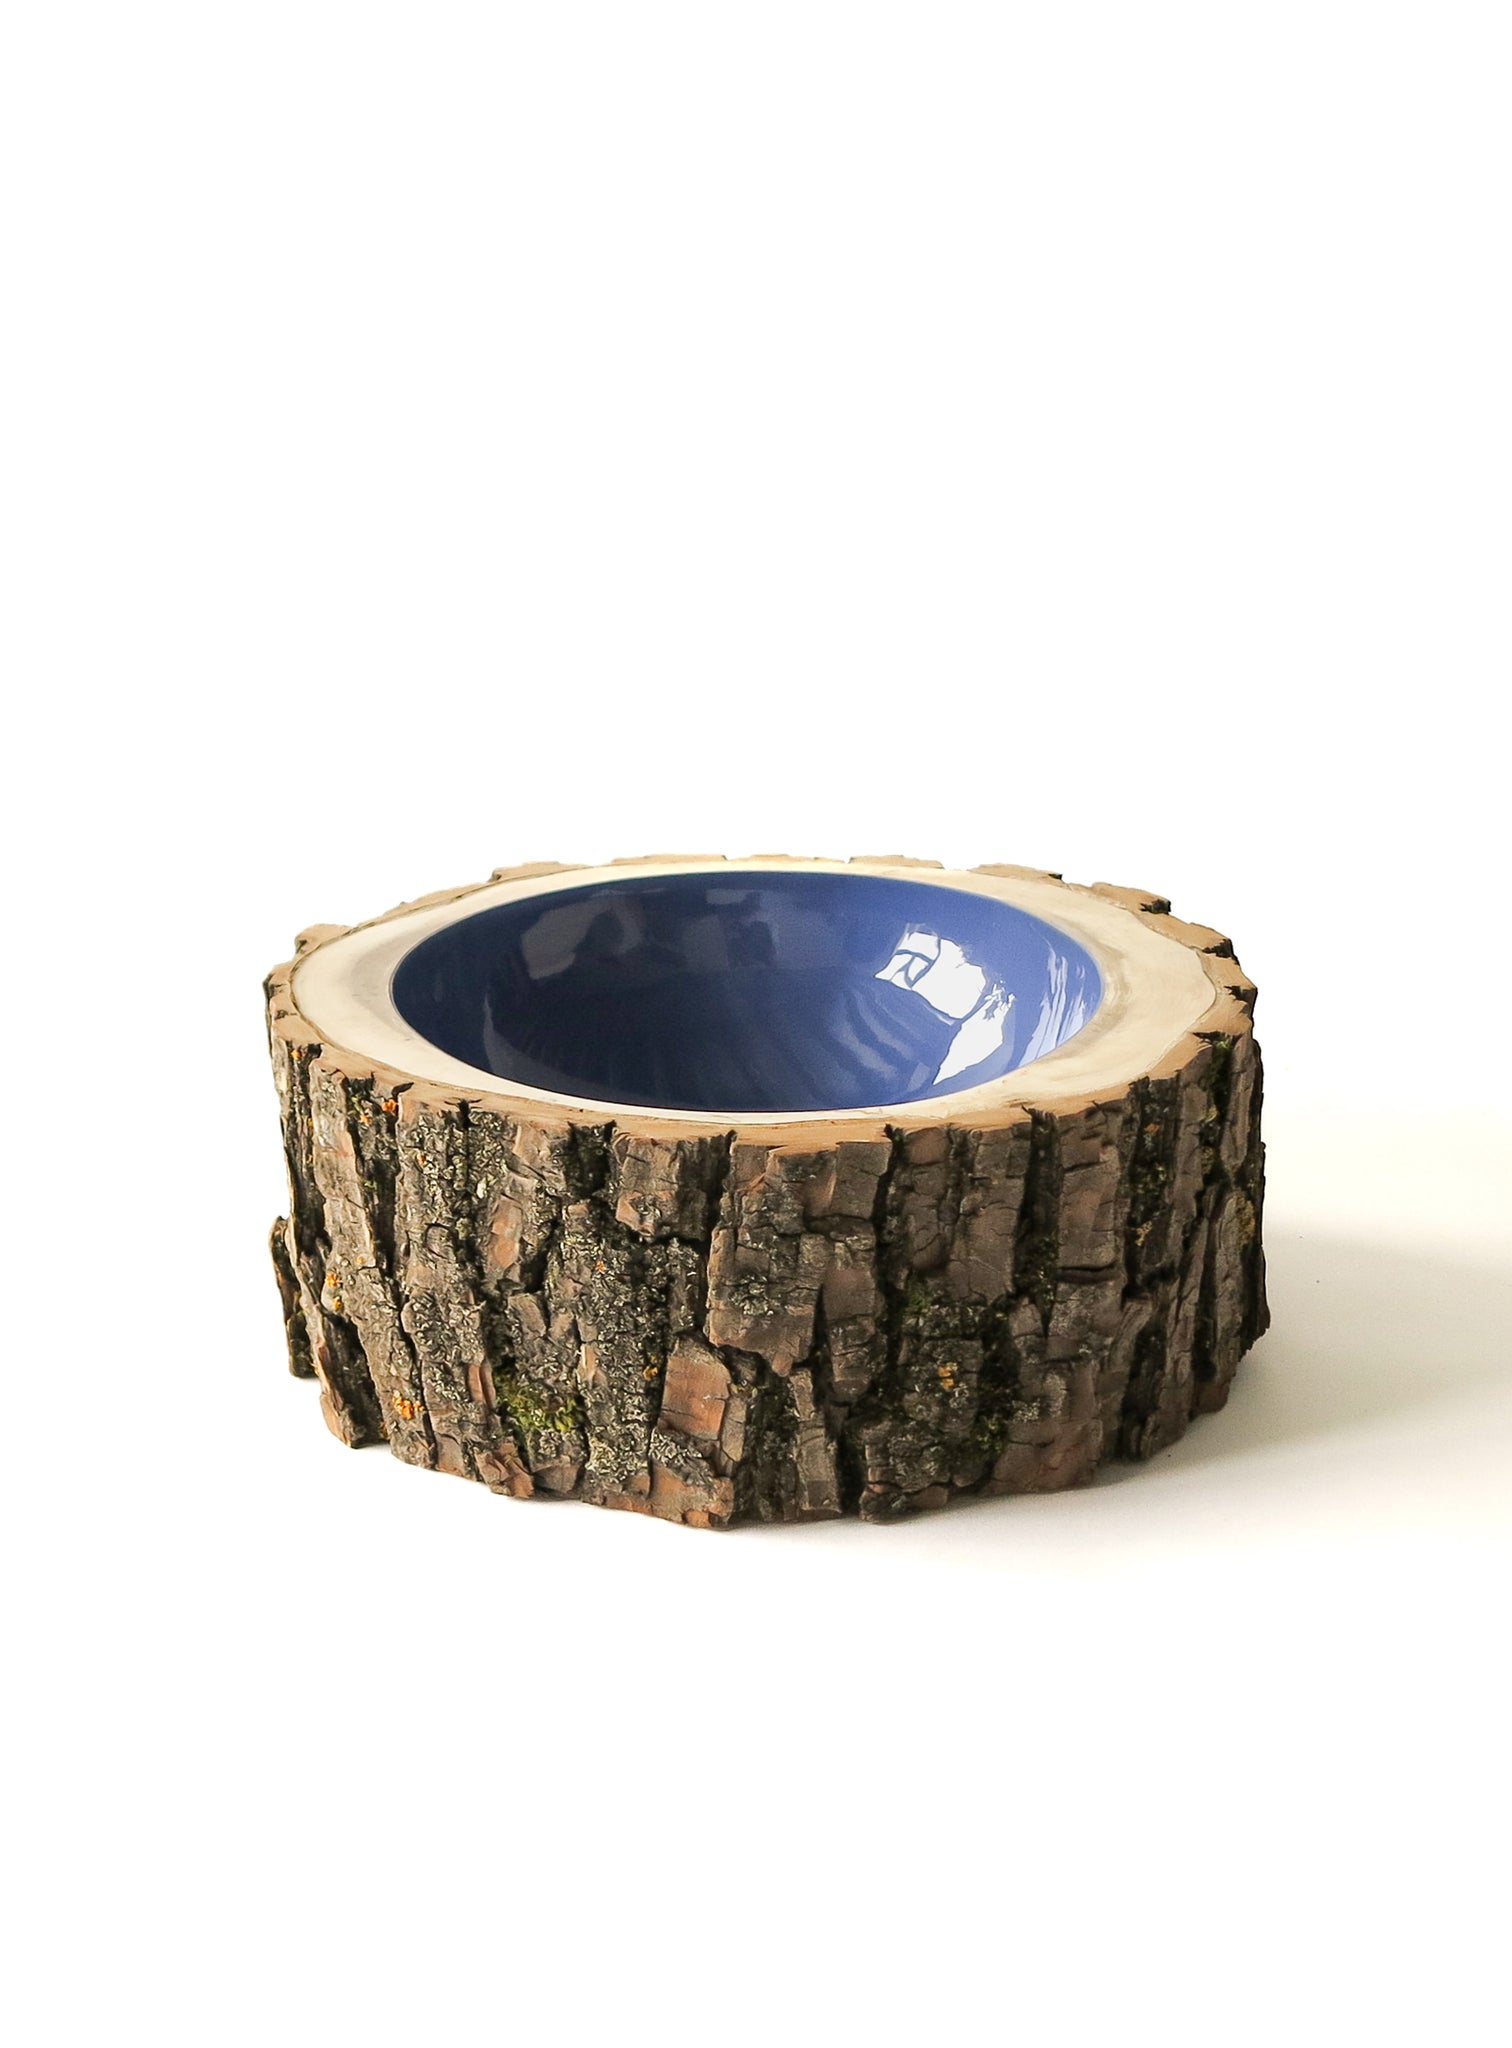 Log Bowl | Size 8 | Twilight